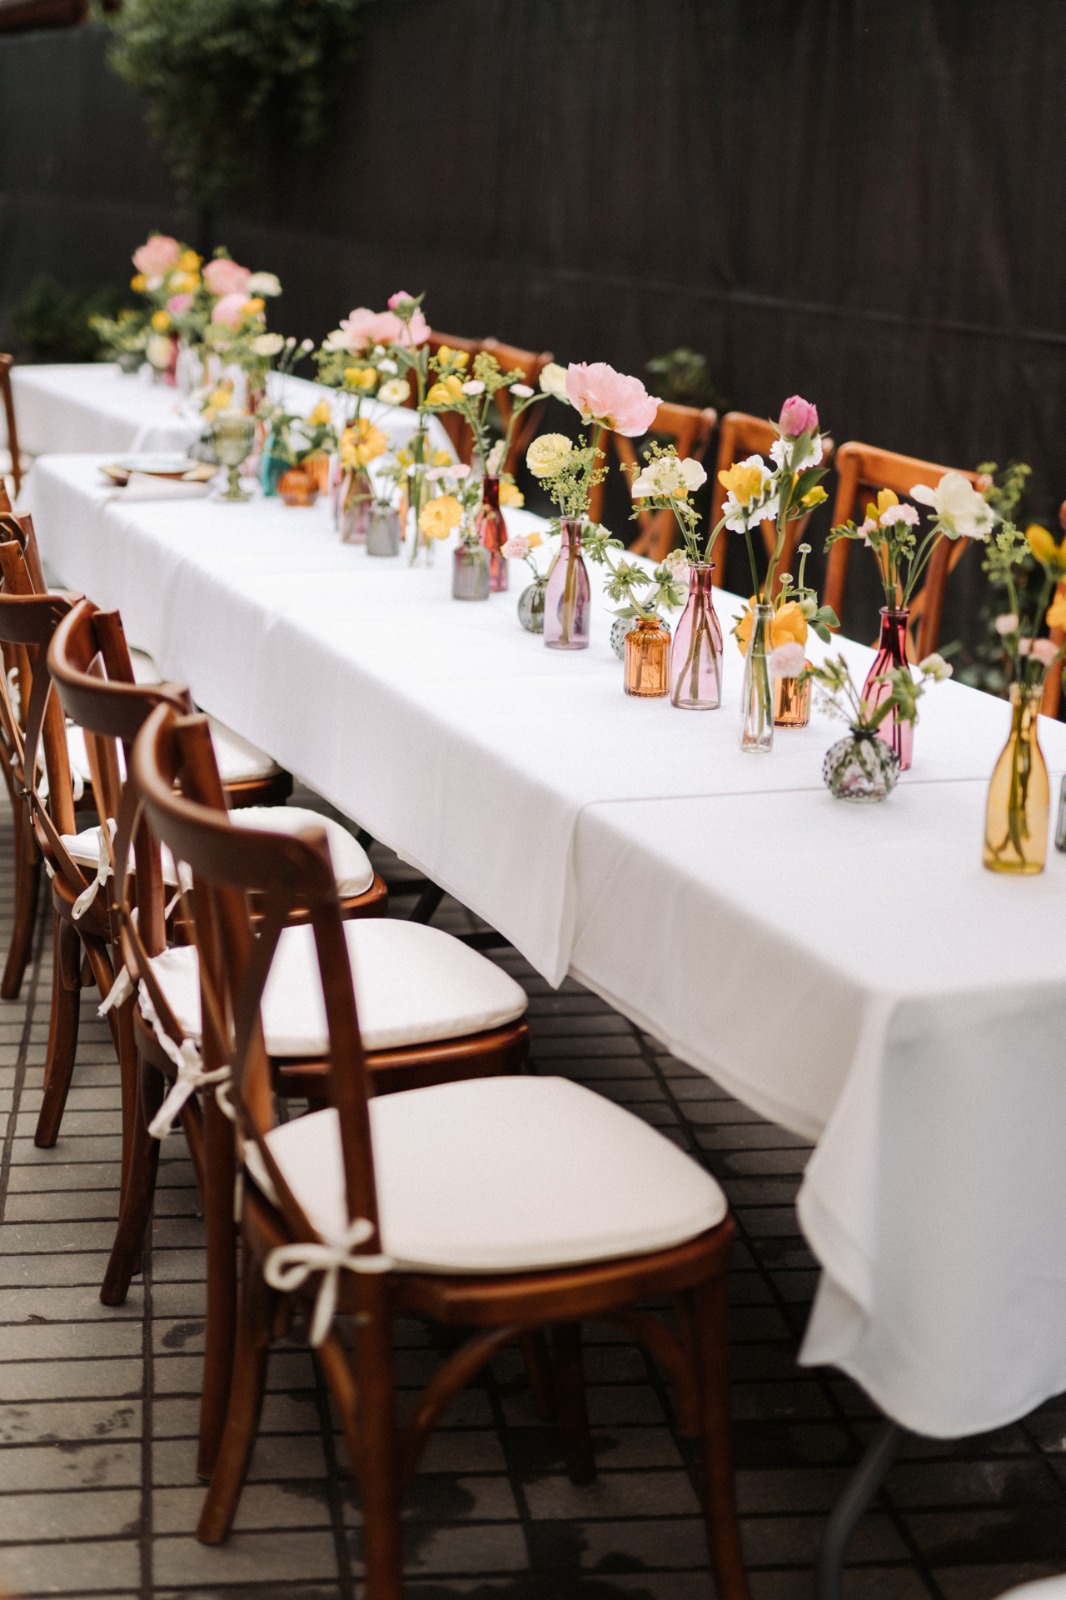 inchiriere scaune Pilgrim pentru nunta in gradina